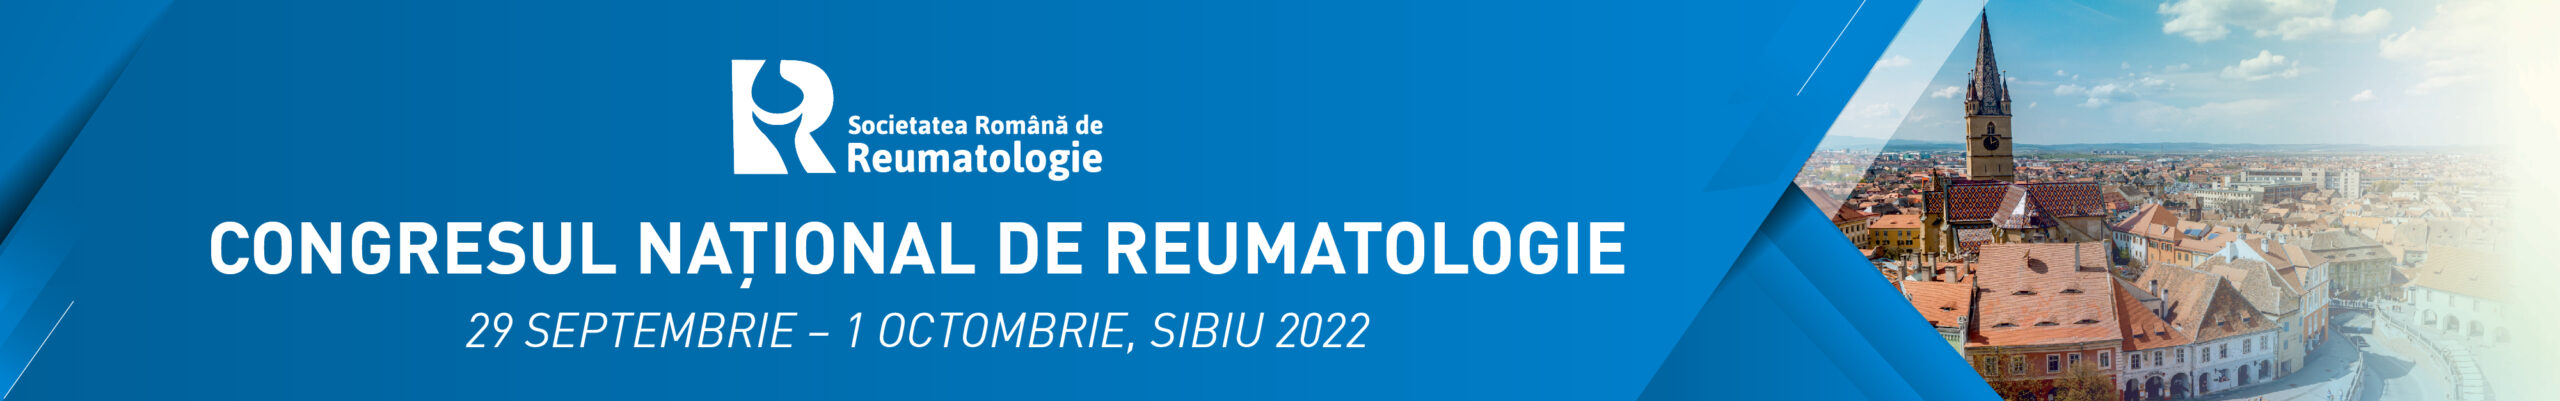 Congres national de Reumatologie 2022